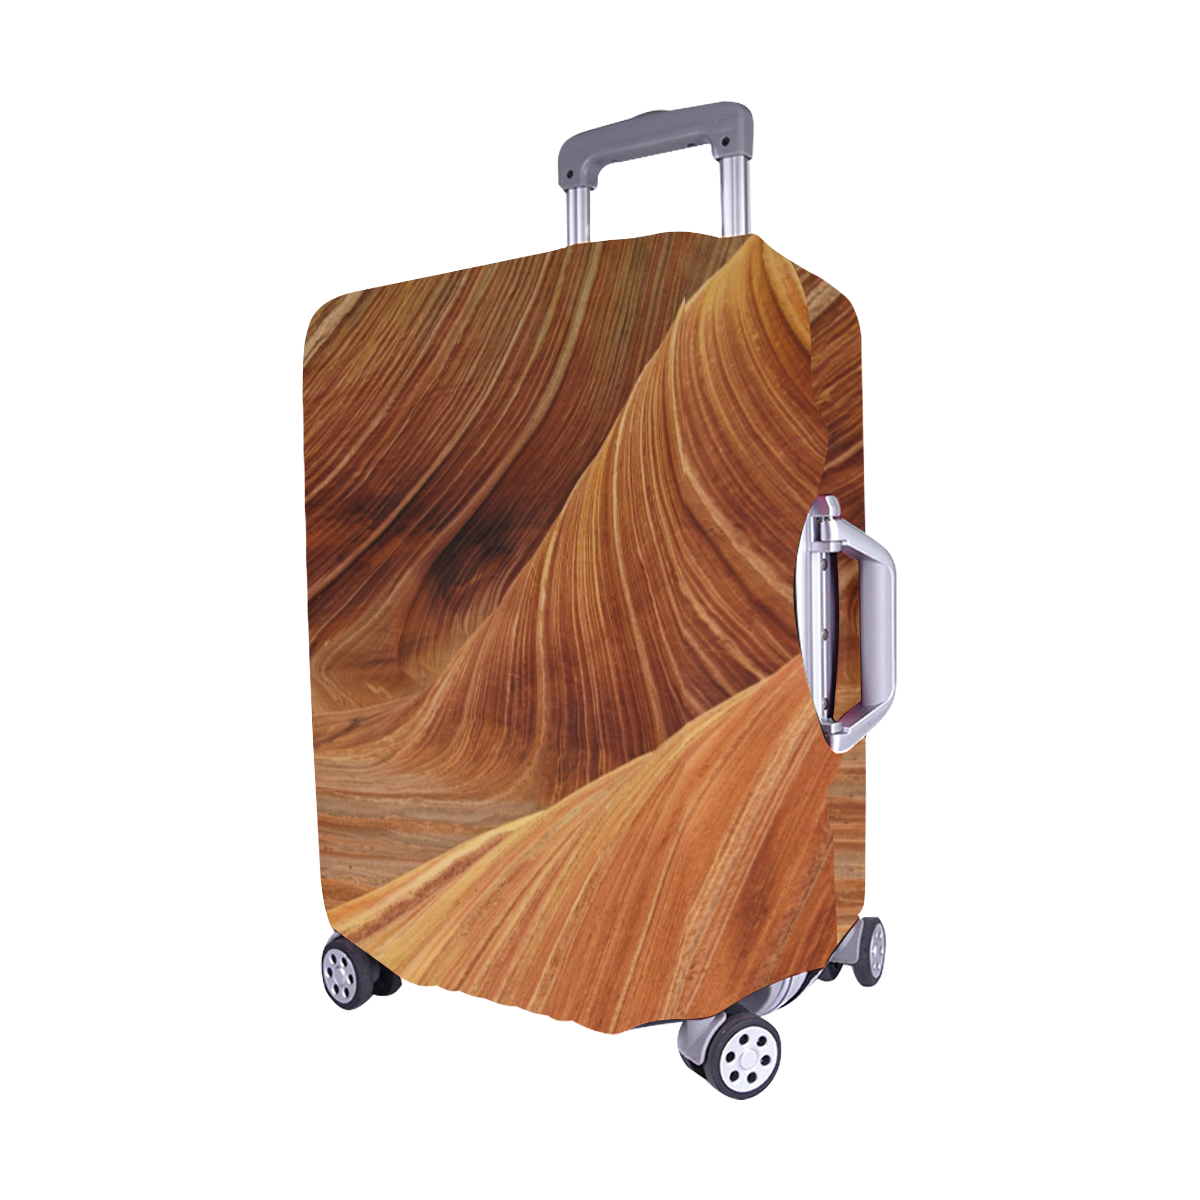 Sandstone Luggage Cover/Medium 22"-25"